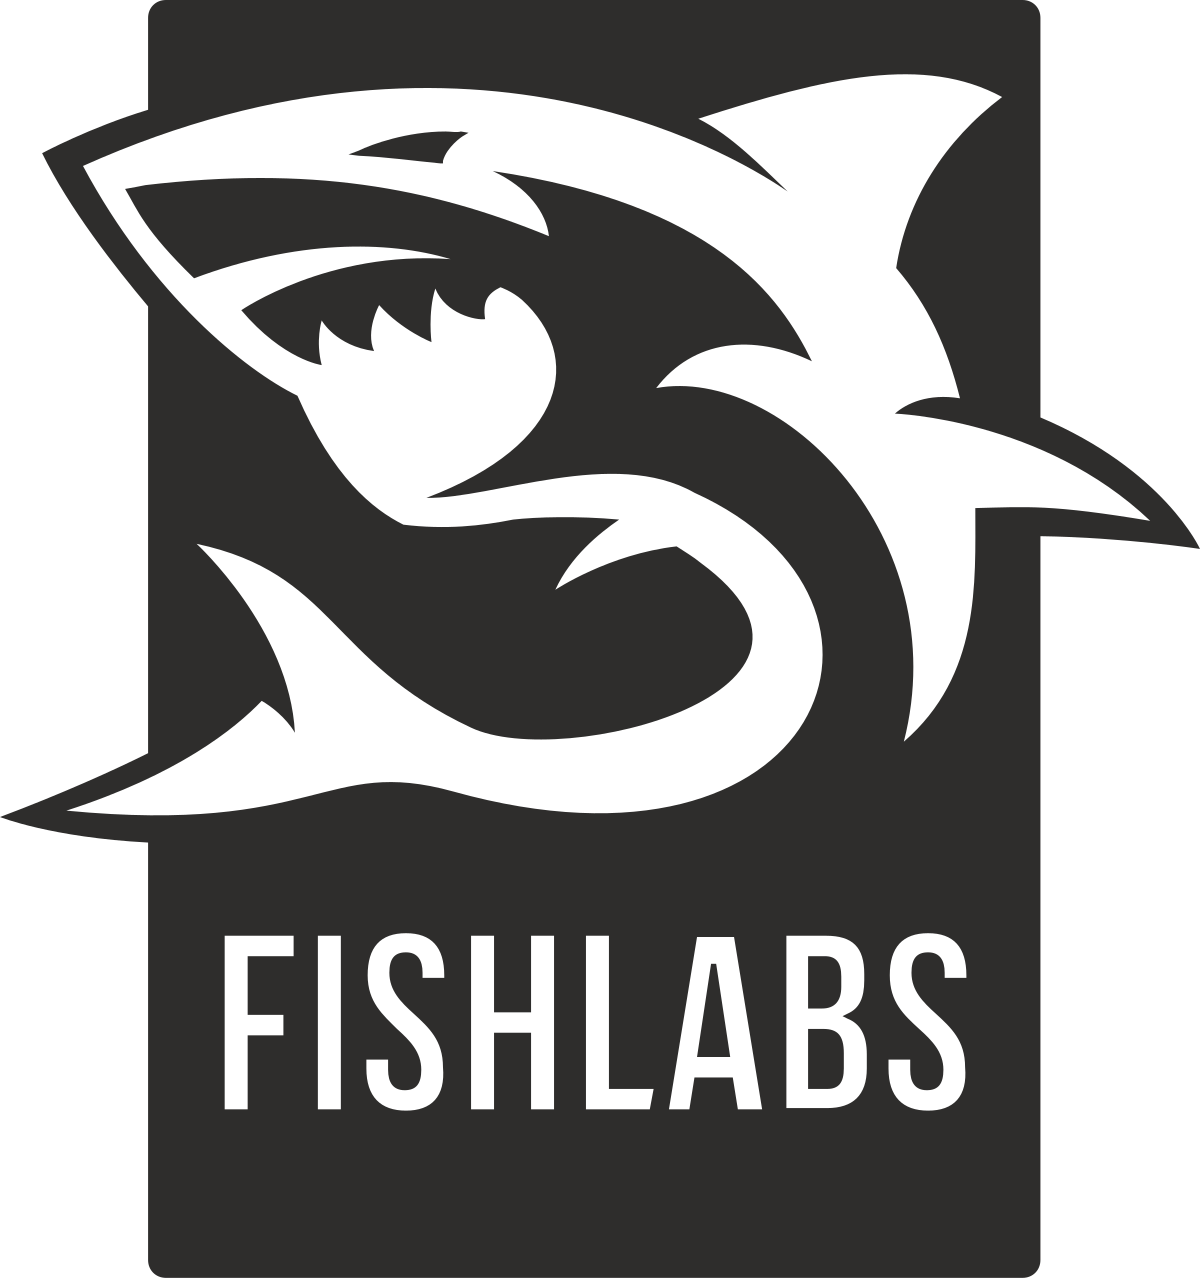 Fishlabs - Wikipedia